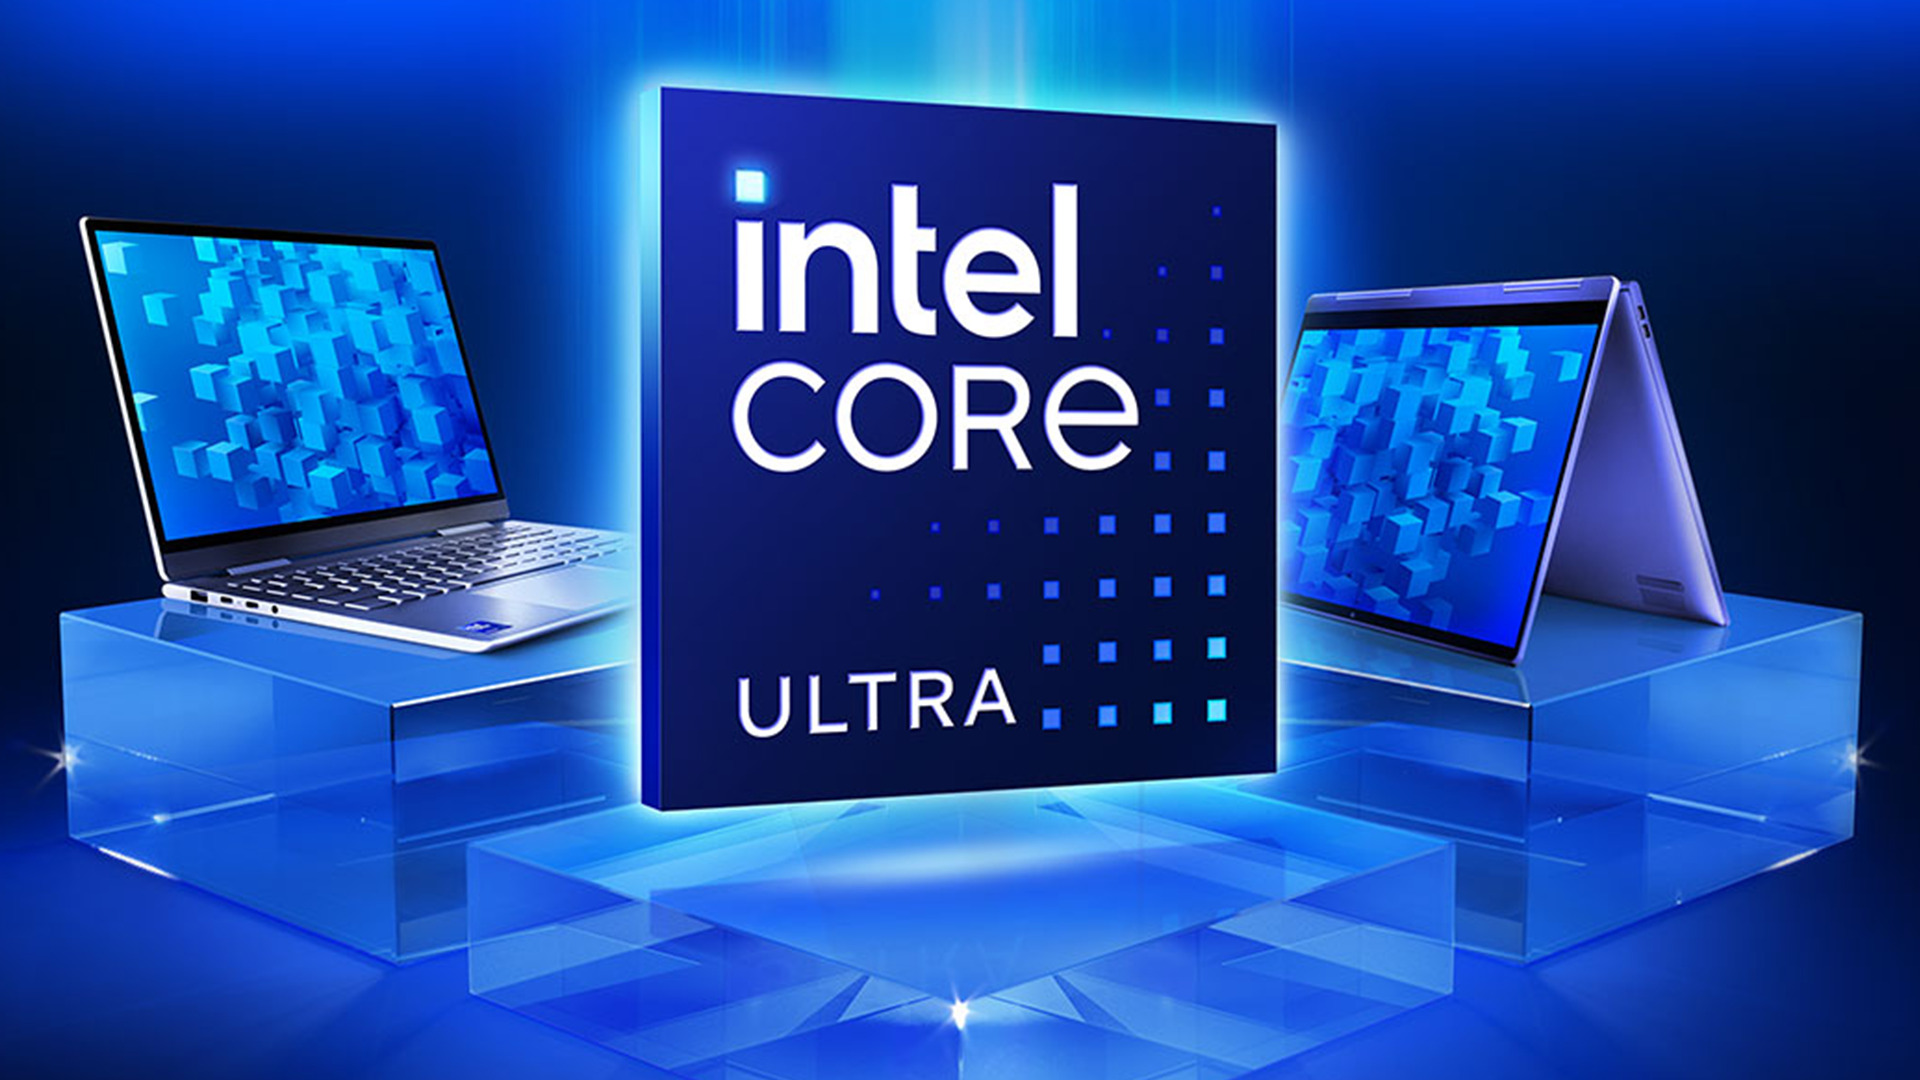 Intel Core Processors: Dell PCs